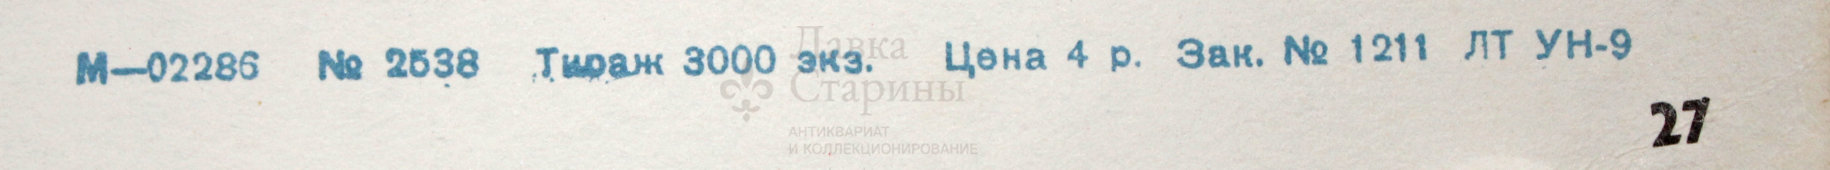 Советский агитационный плакат «Слава советскому воздушному флоту!», редактор В. М. Соколов, Ленинград, 1943 г., репринт 1970-е